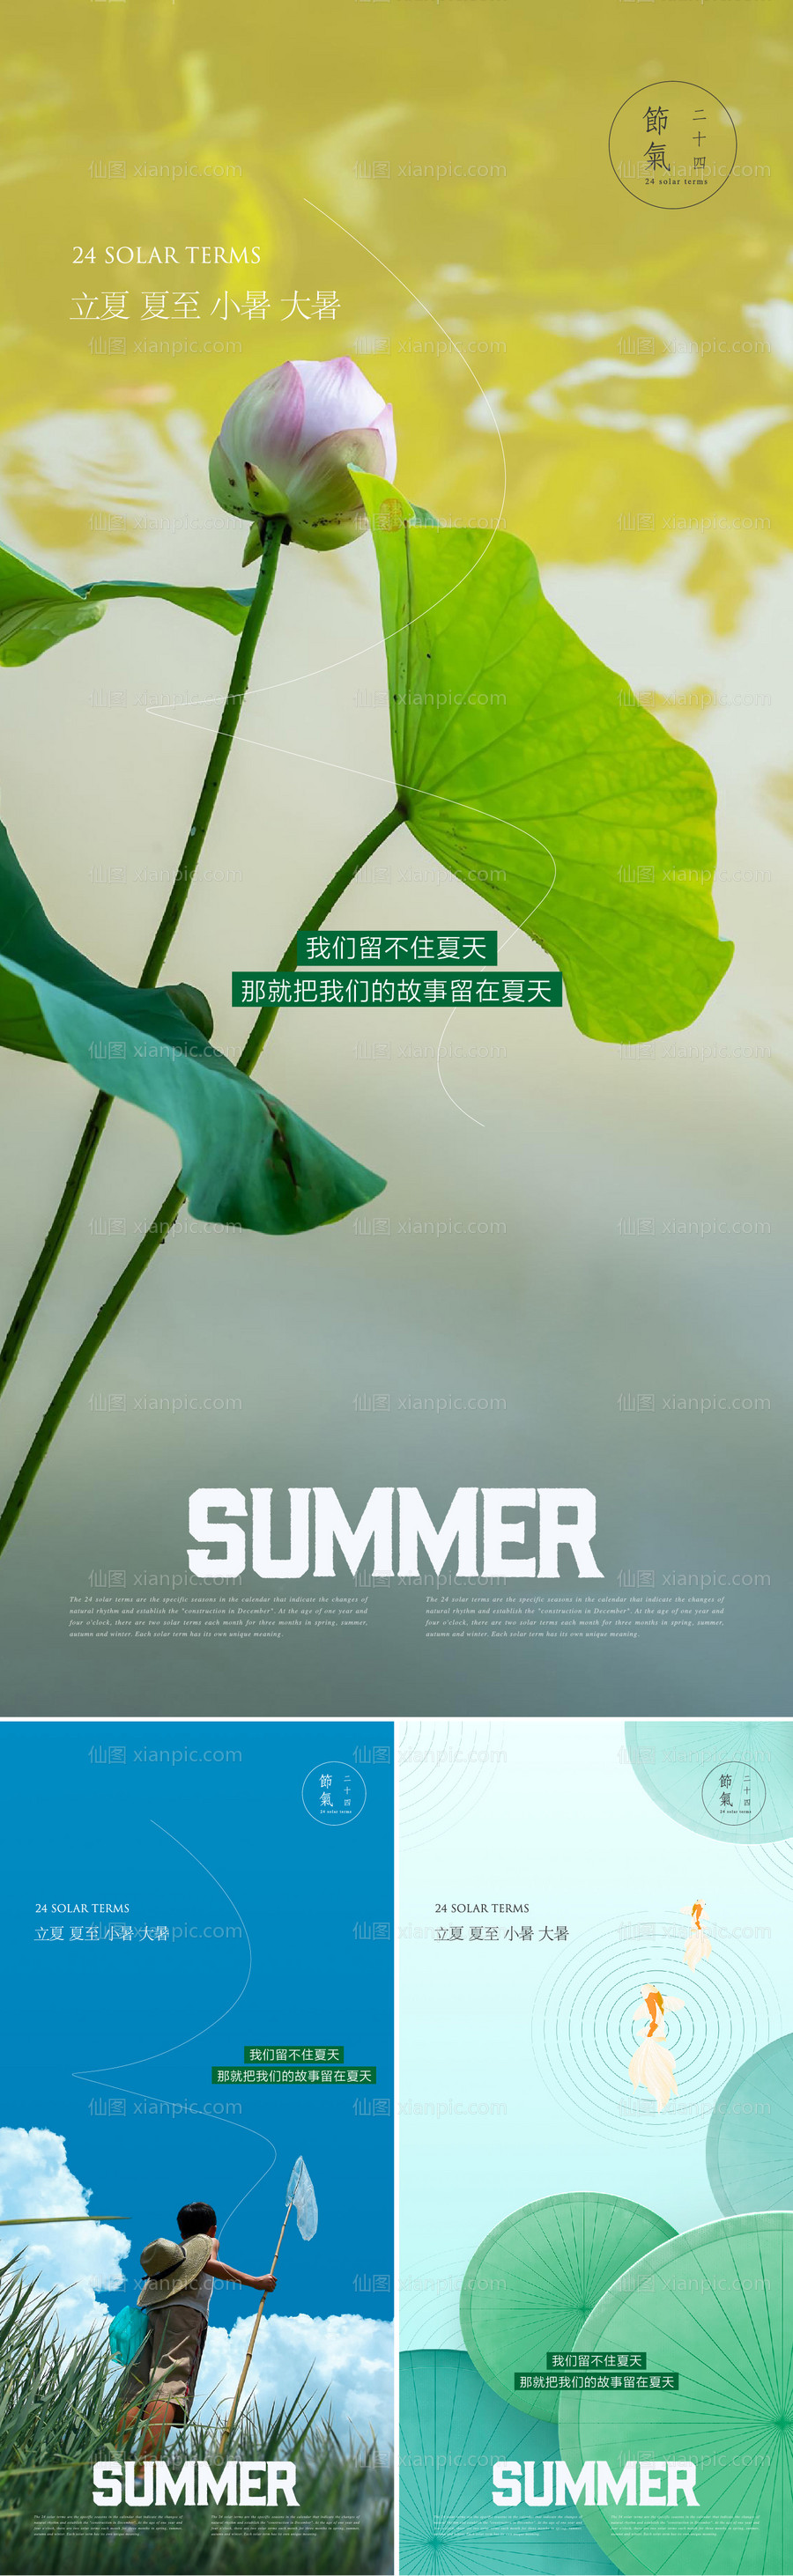 素材乐-夏天节气合集系列海报